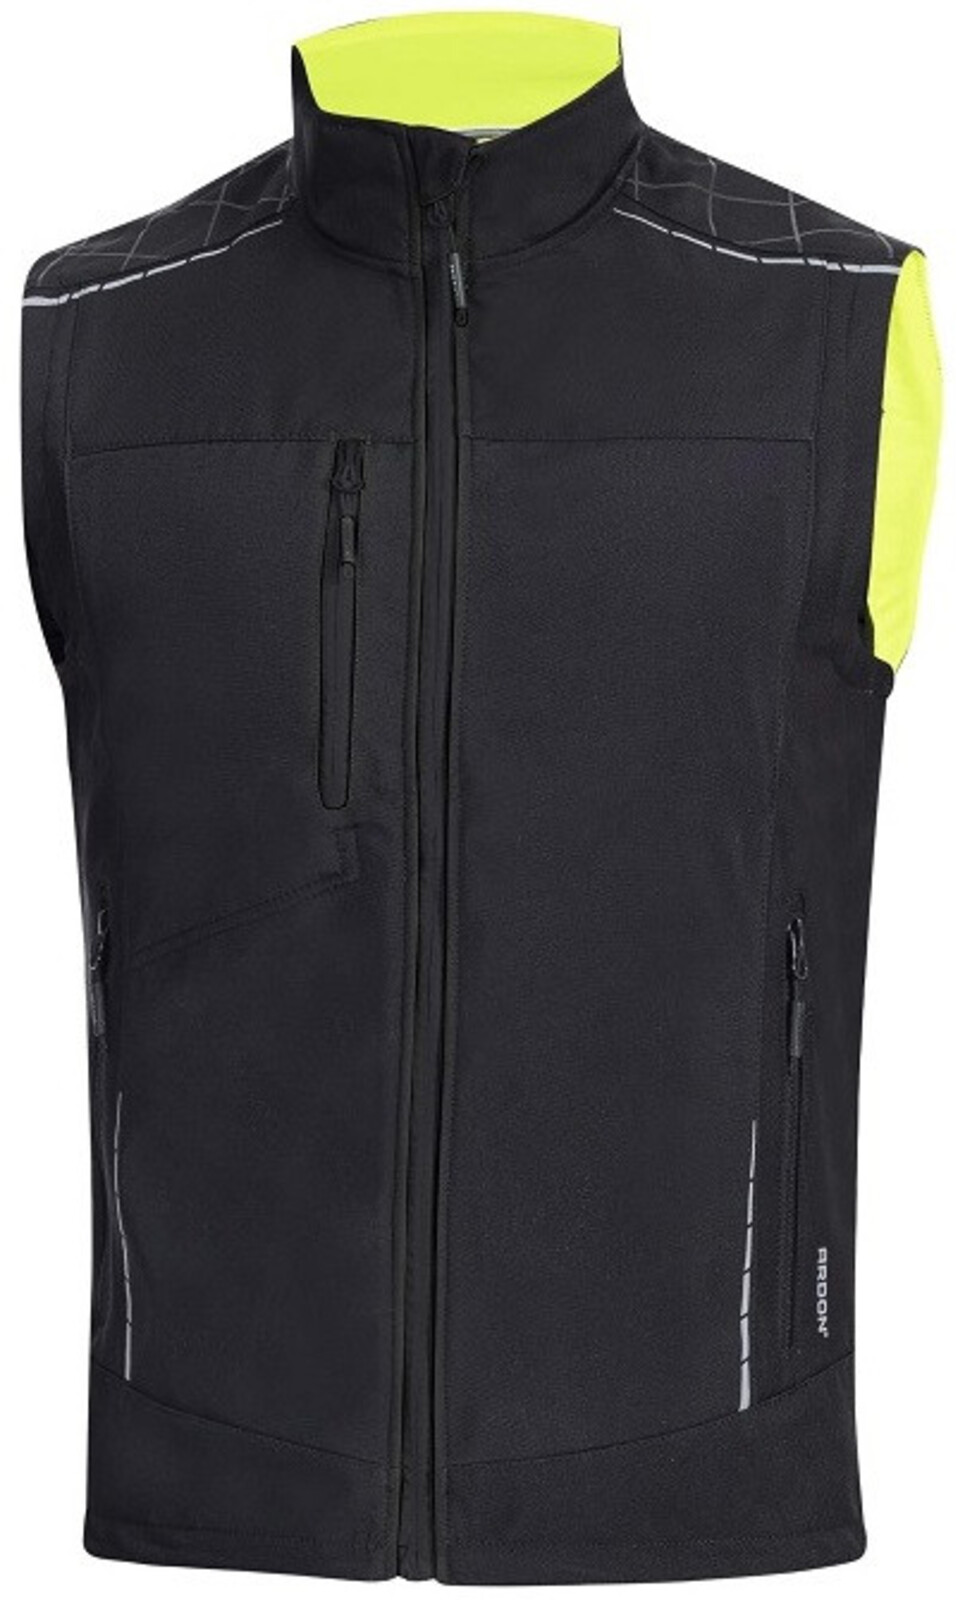 Pánska zimná softshellová vesta Ardon Vision - veľkosť: S, farba: čierna/žltá